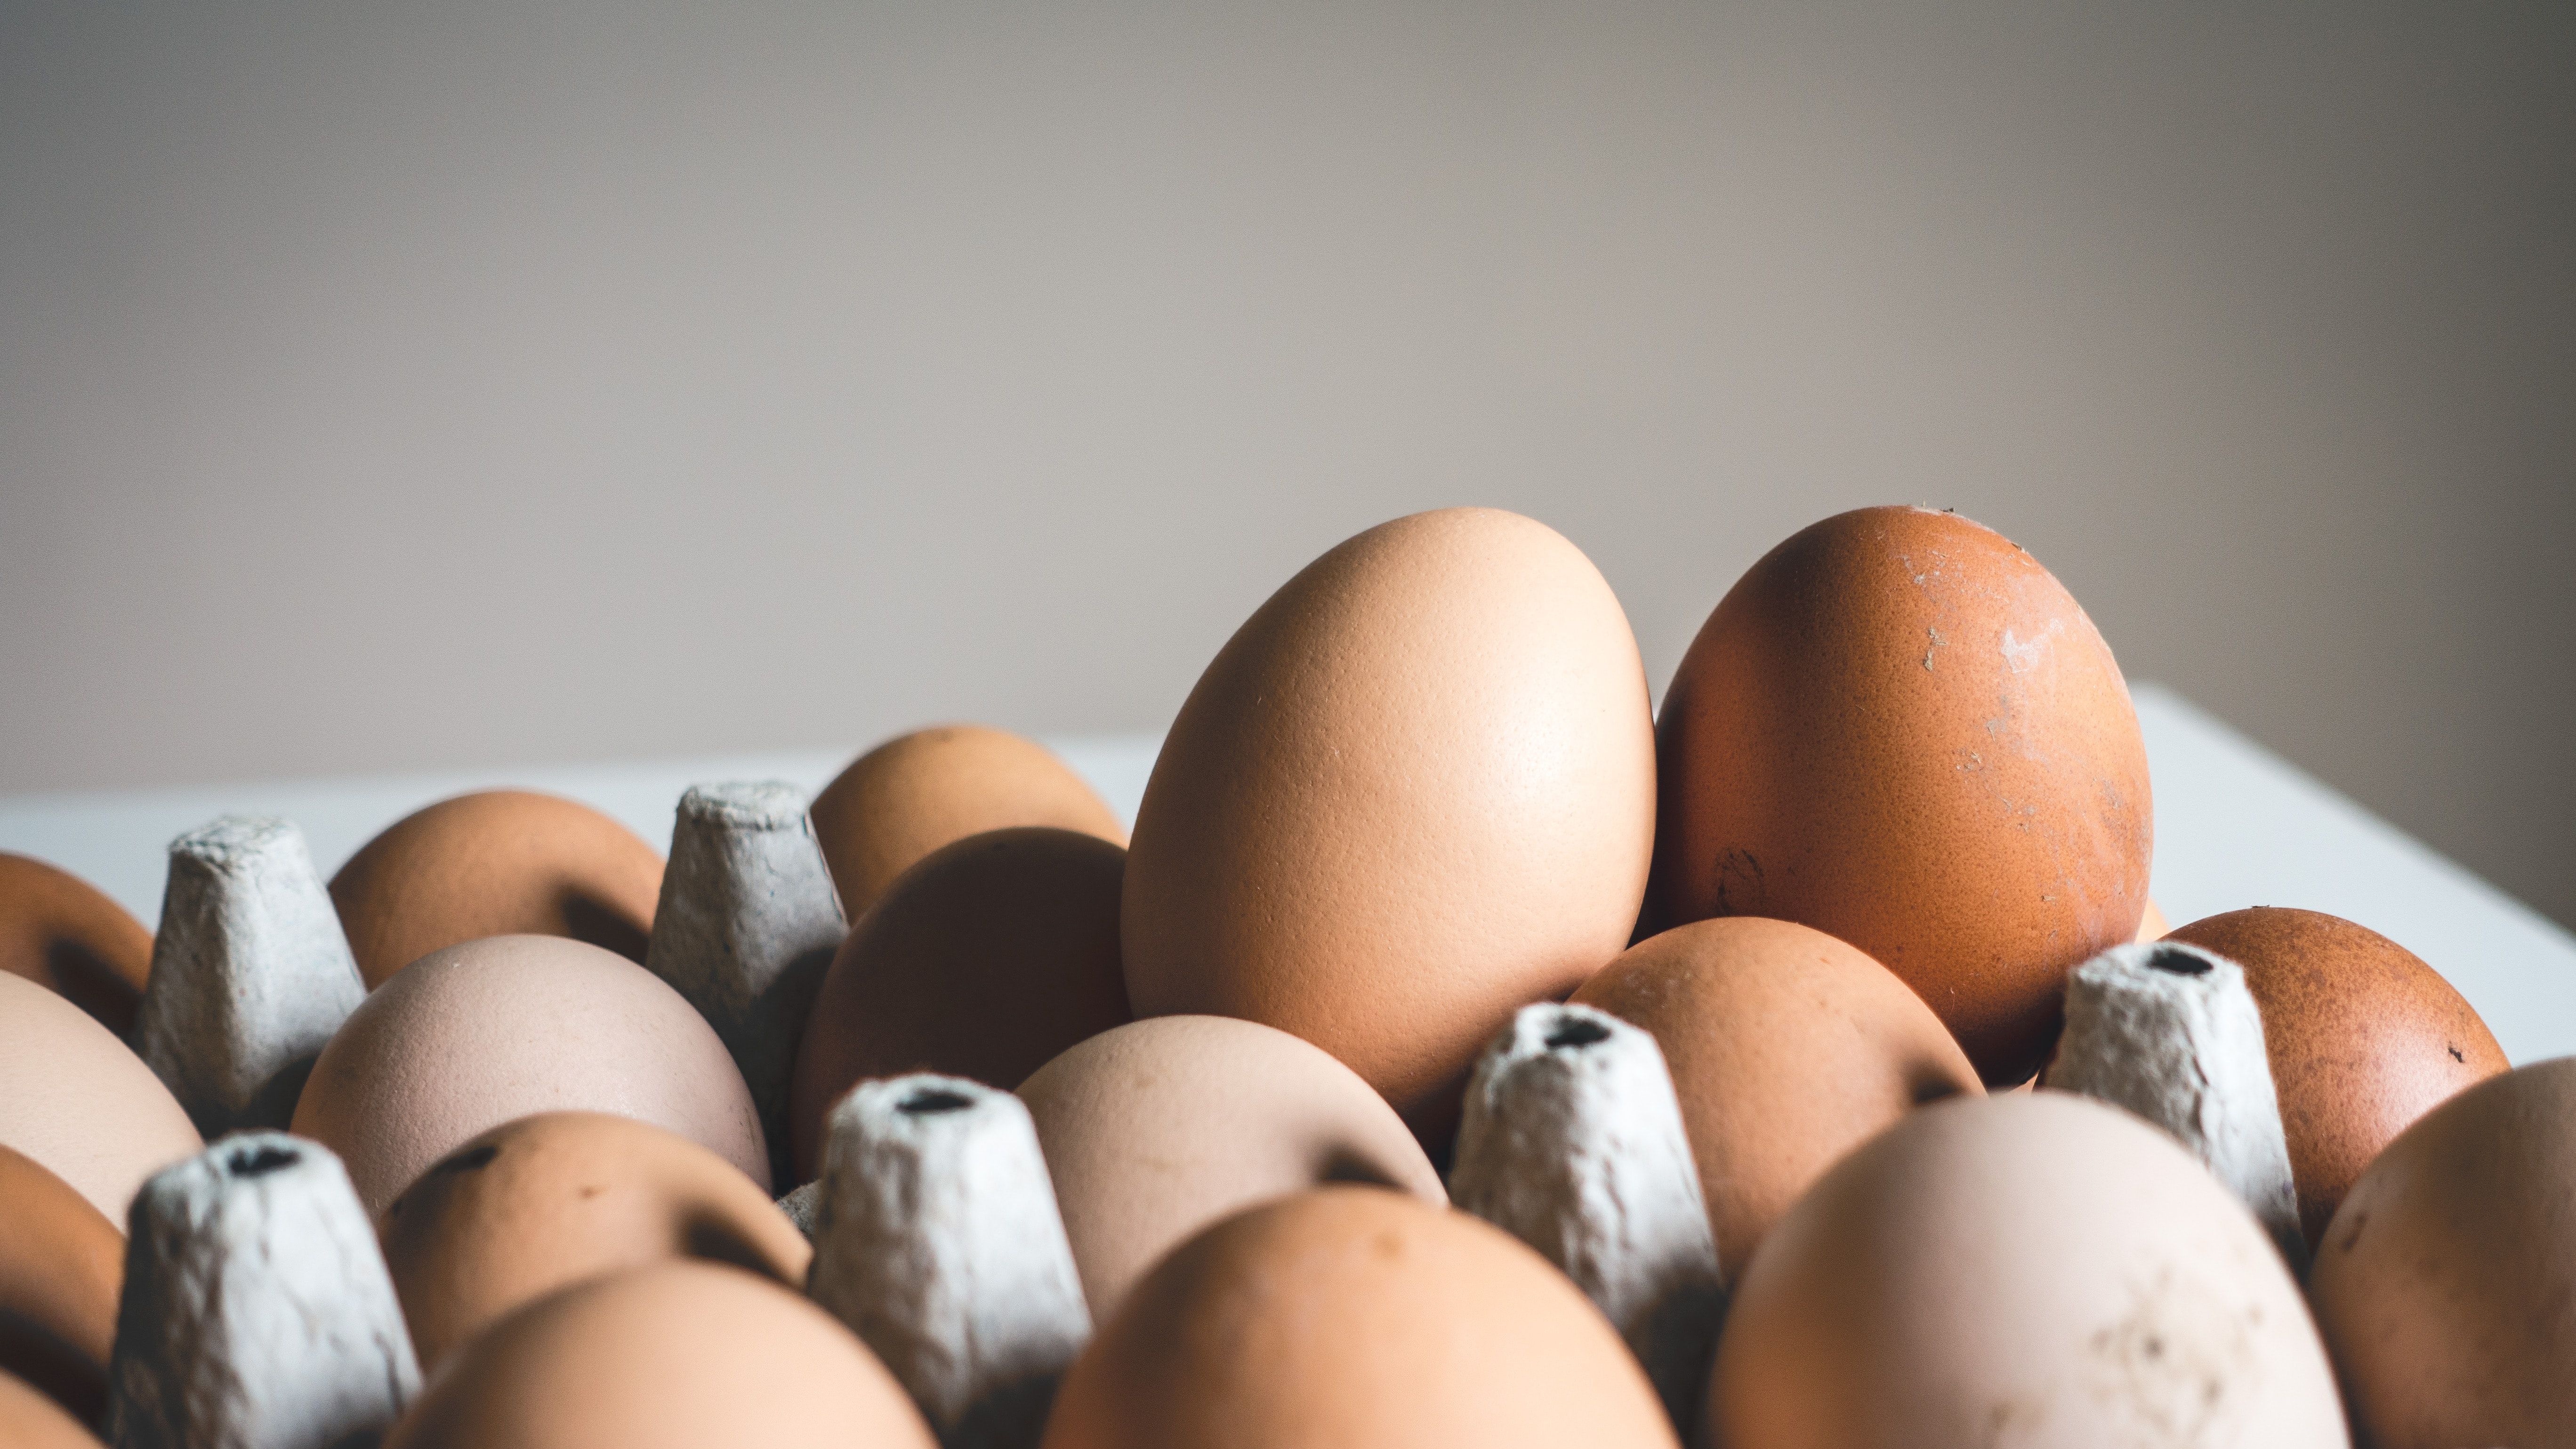 Ricette e segreti per cuocere le uova alla perfezione